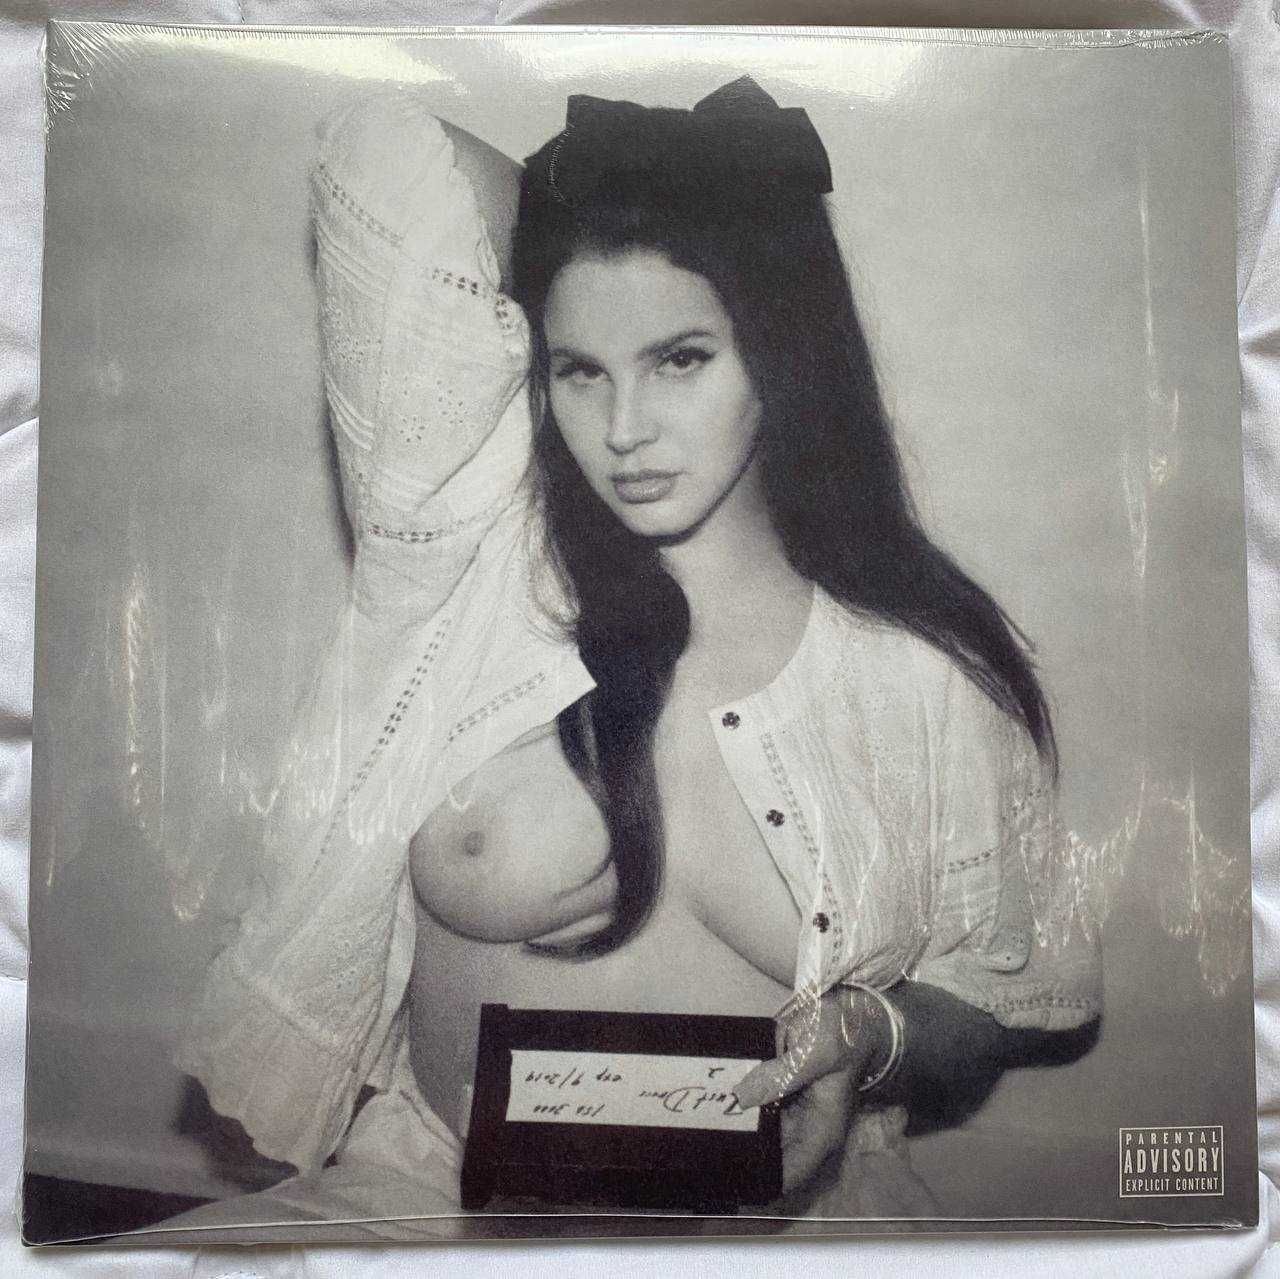 Lana Del Rey - Ocean Blvd 
Exclusive Vinyl Limited Edition